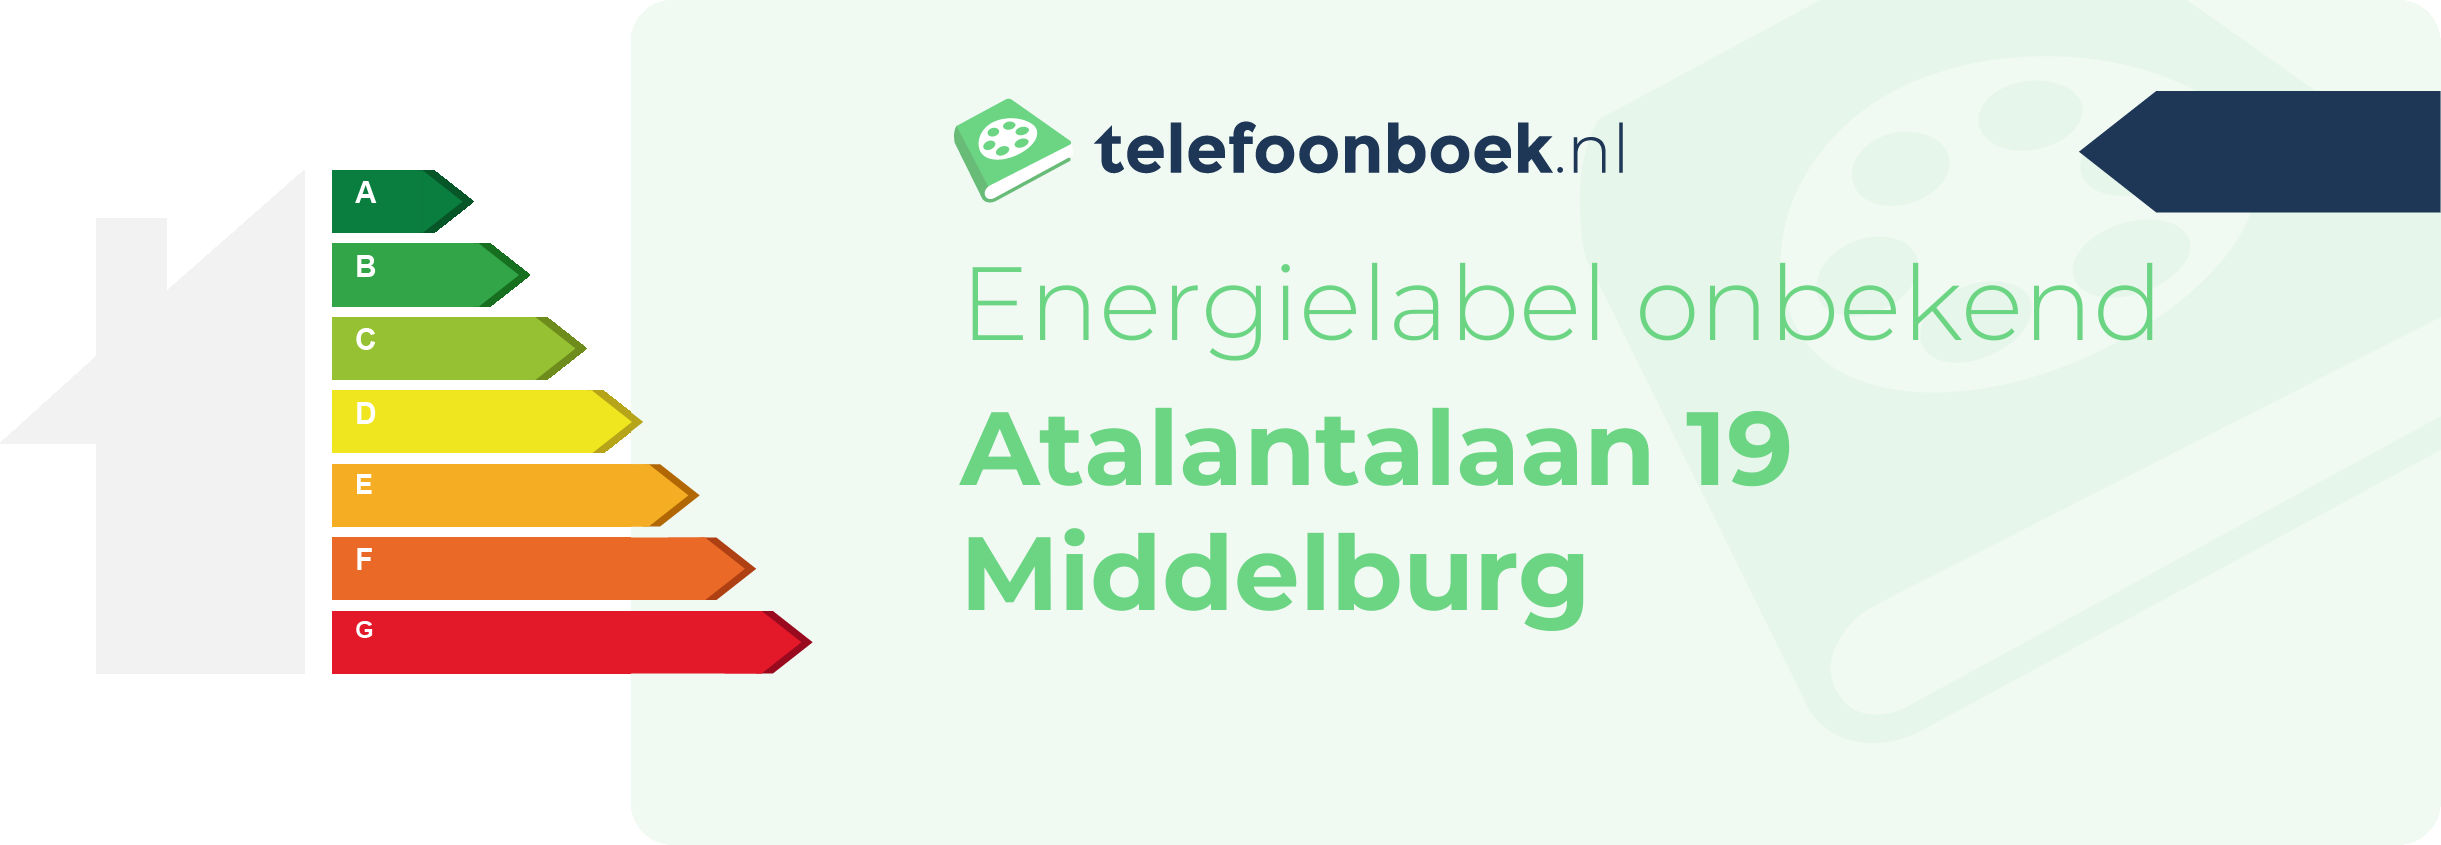 Energielabel Atalantalaan 19 Middelburg